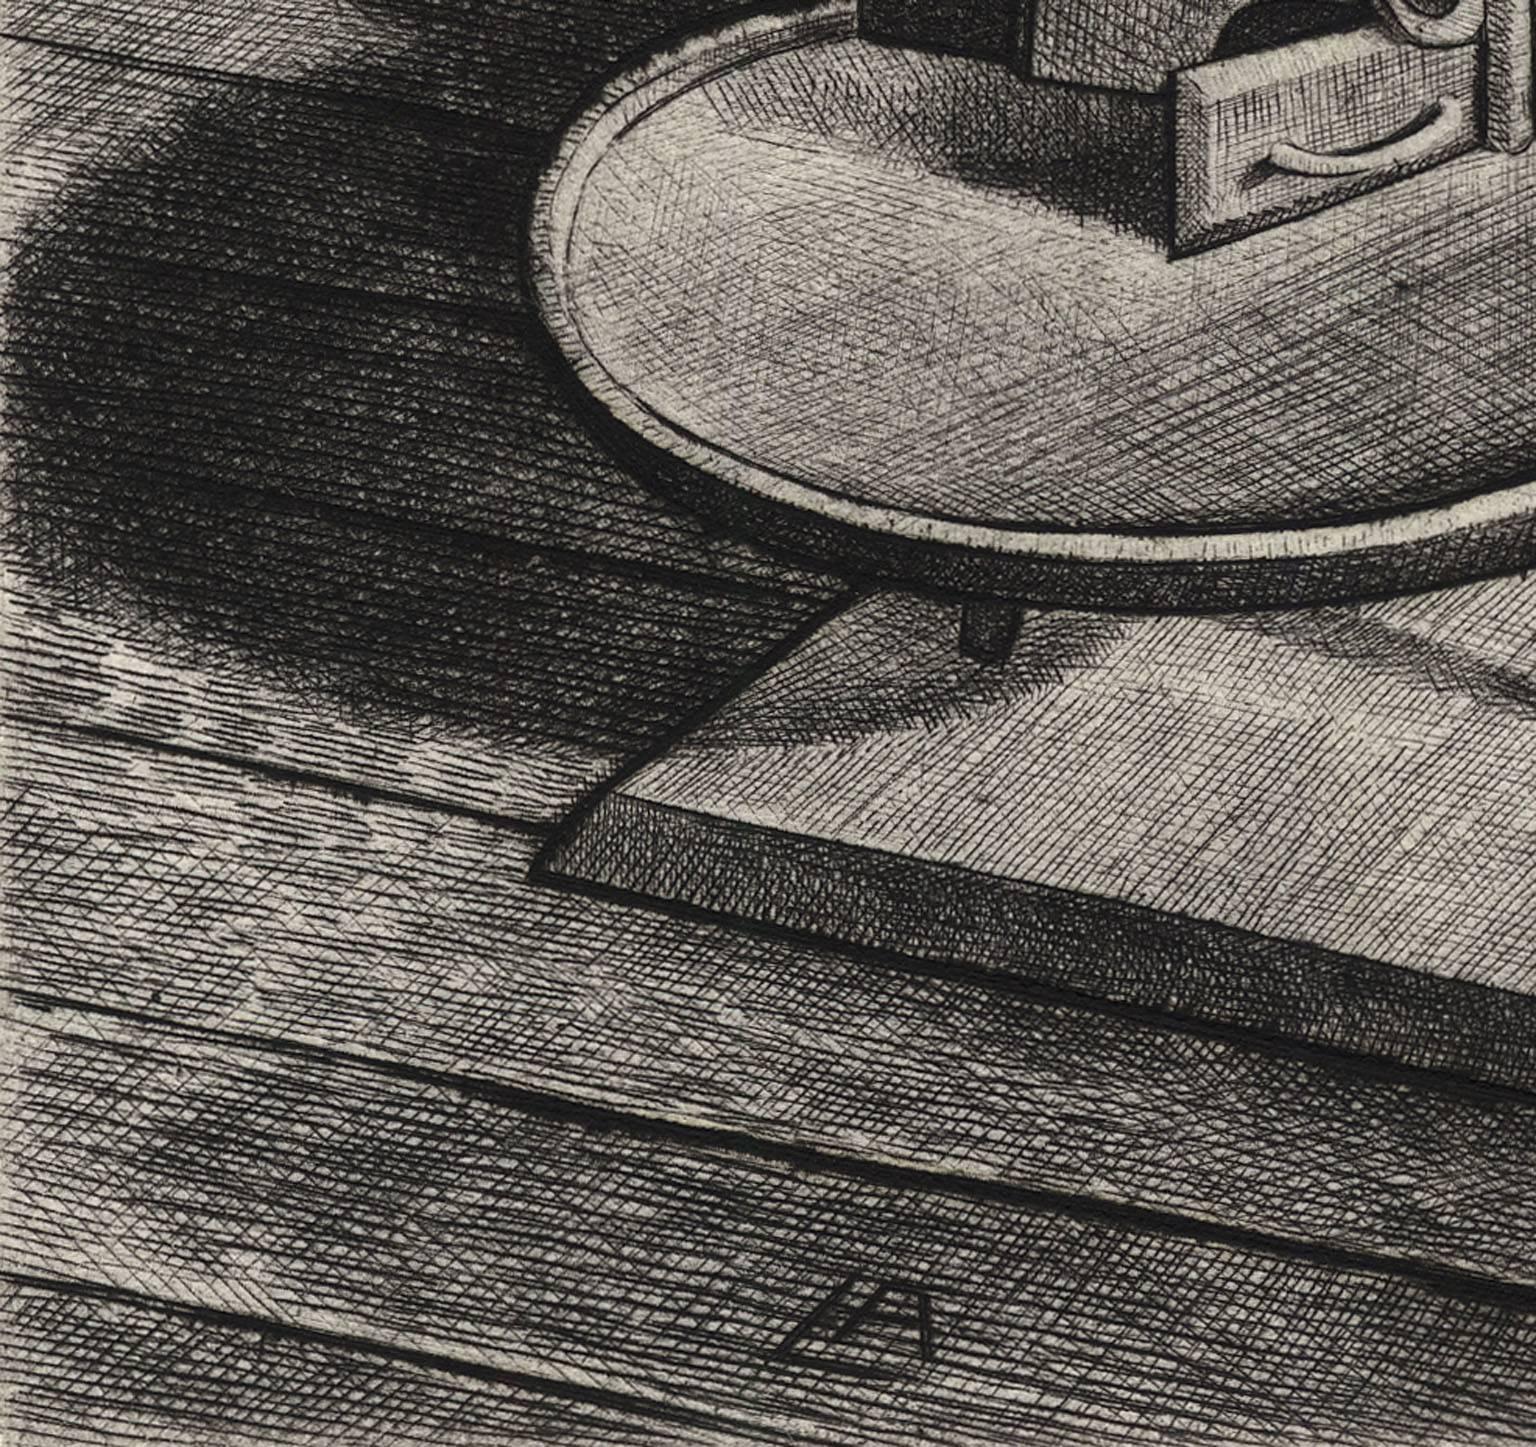 Shaker-Stehlampe. (Amerikanischer Realismus), Print, von Armin Landeck